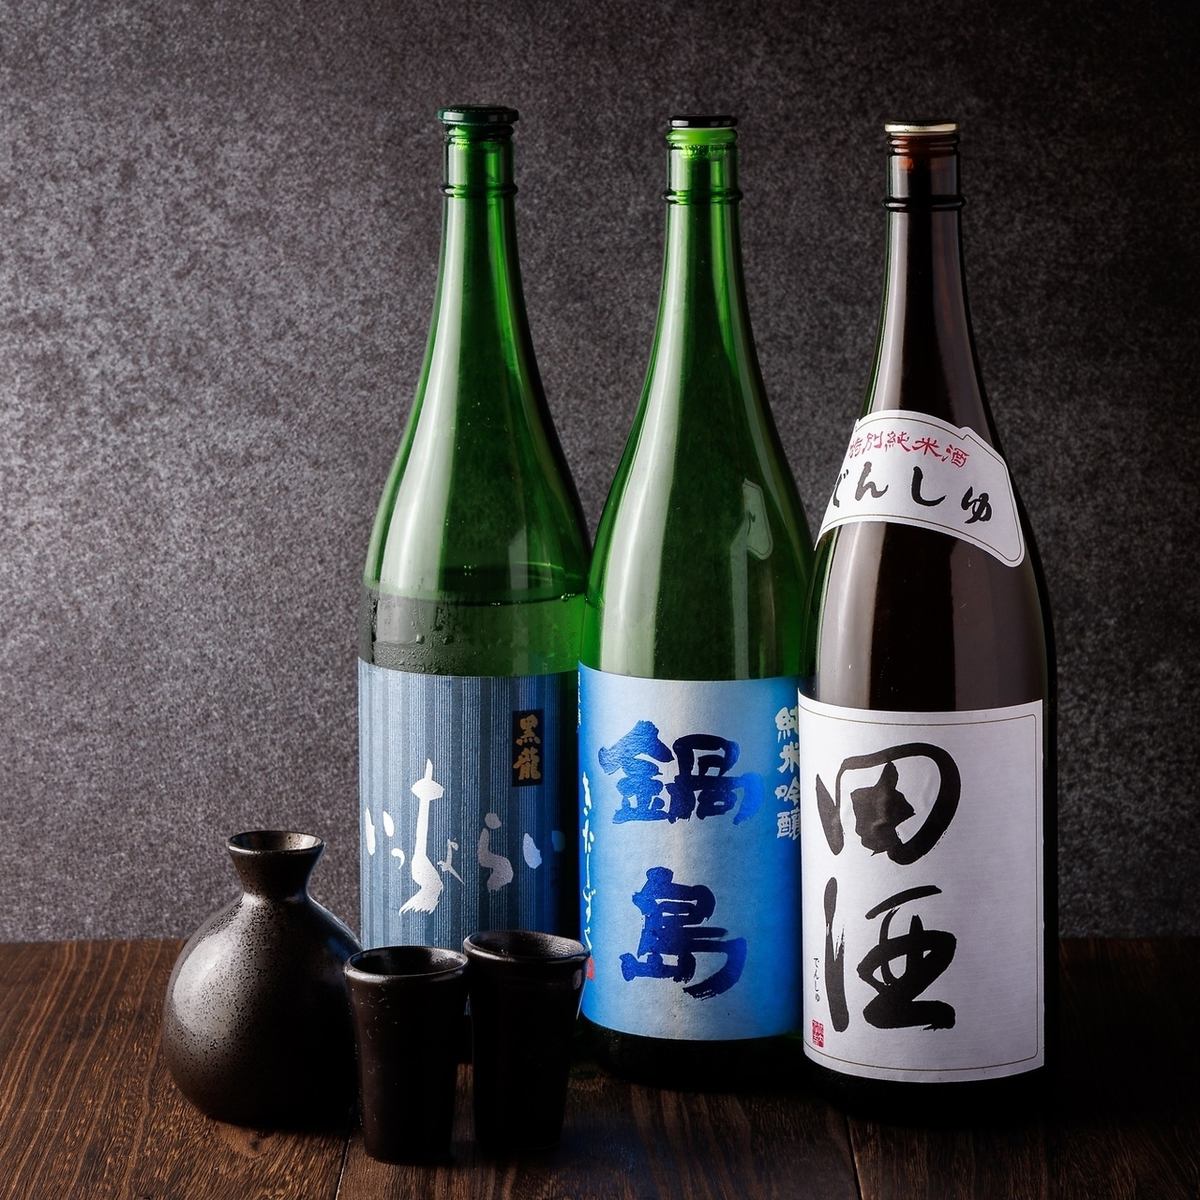 我们提供种类繁多的精选日本酒。